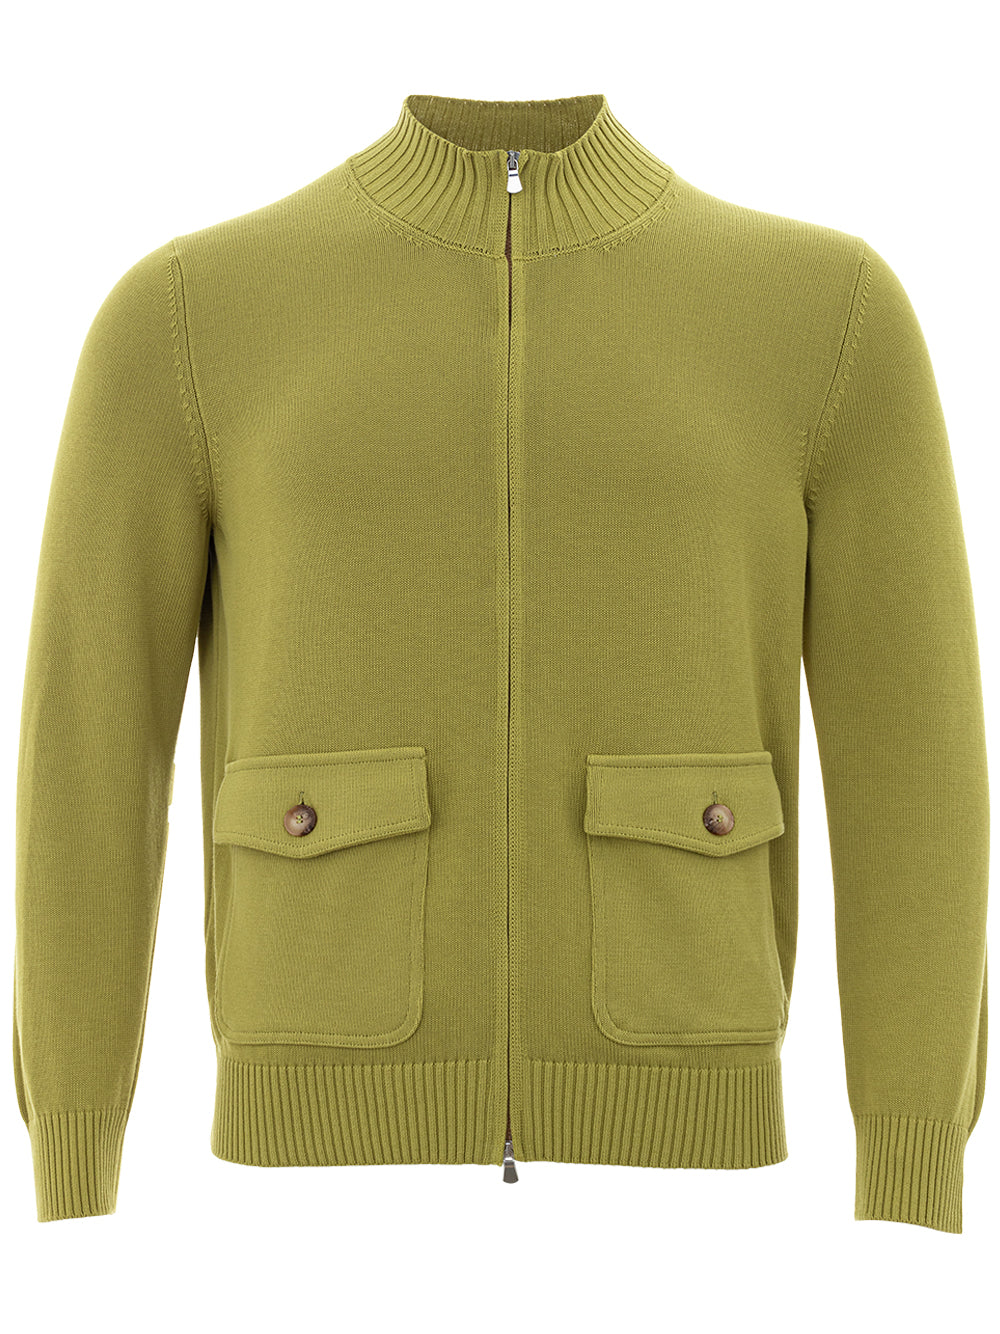 Cardigan sweater in Gran Sasso Green